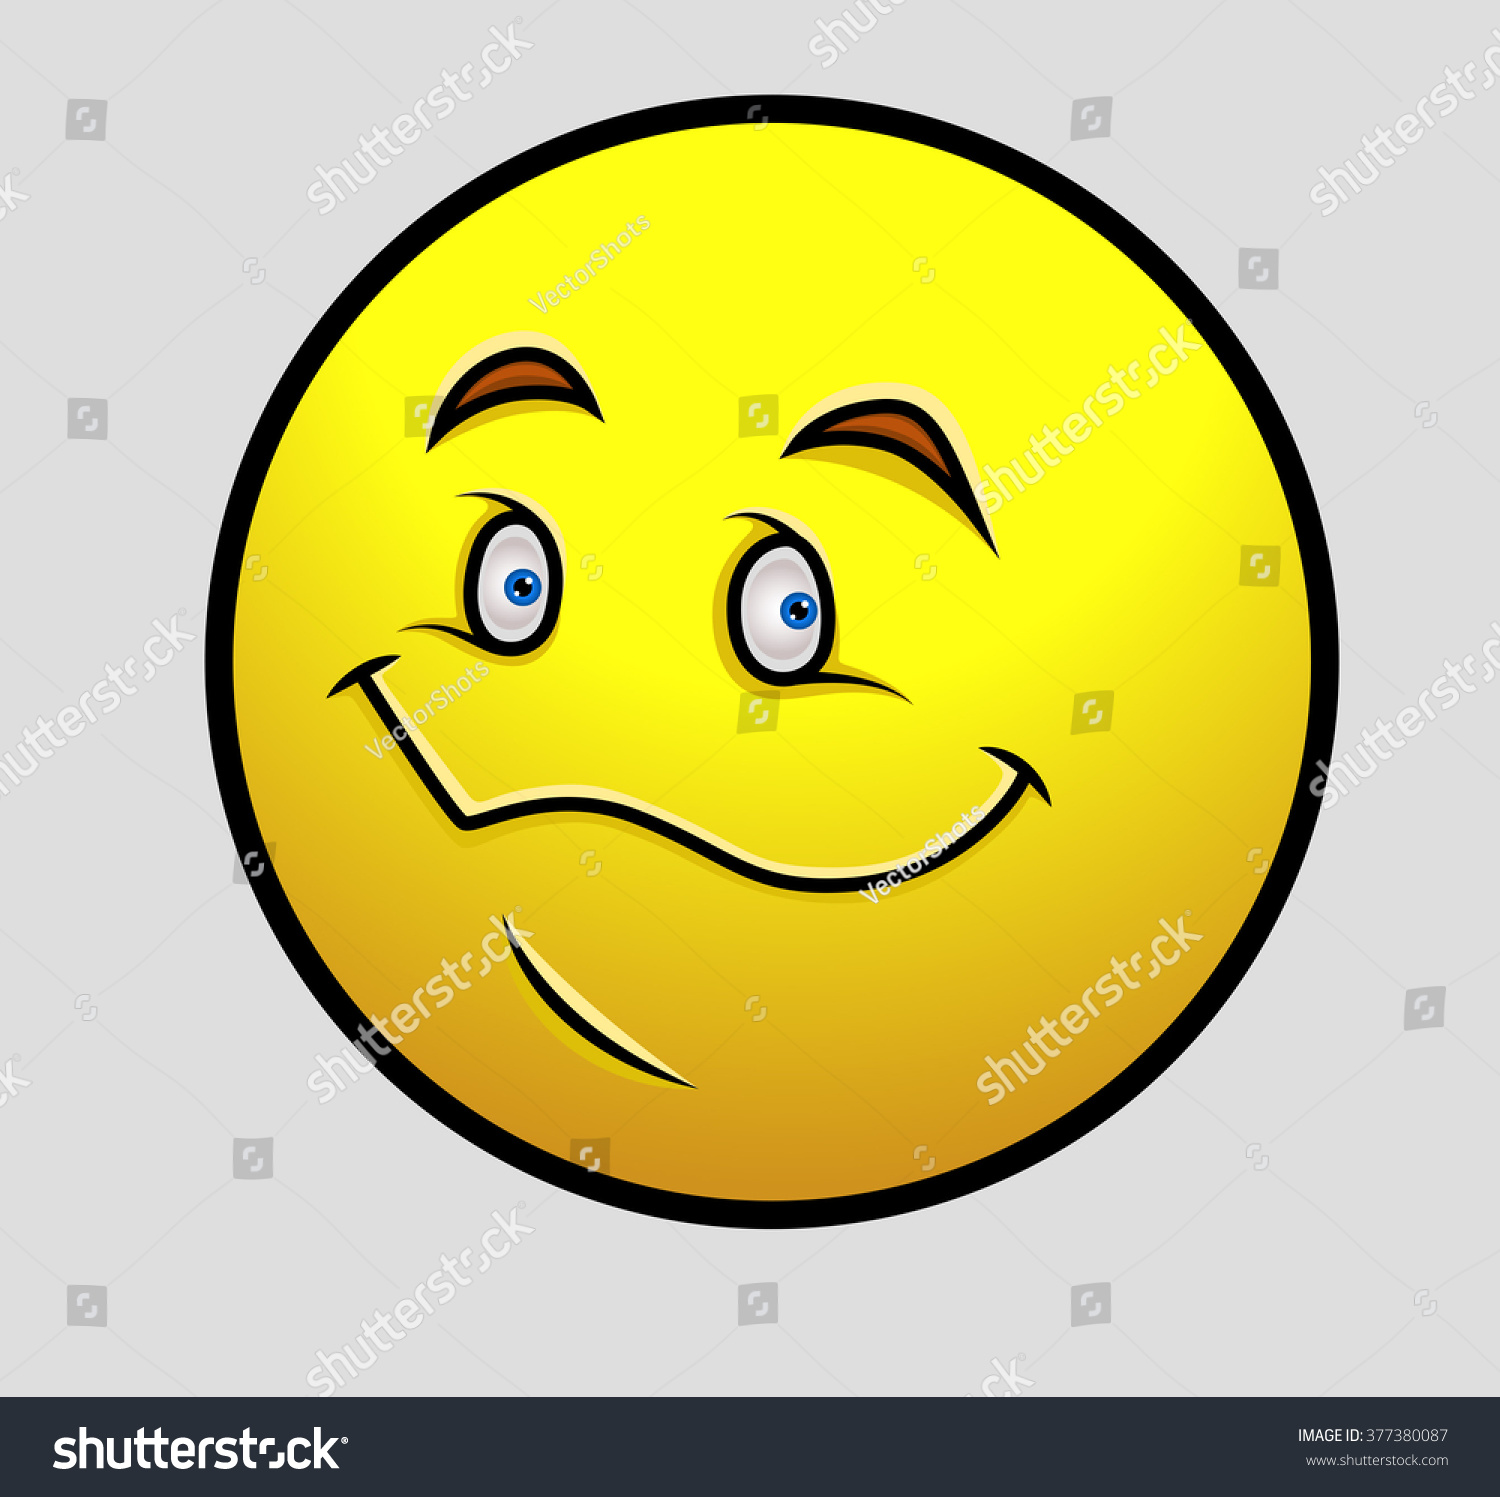 Download Creepy Smile Emoticon Stock Vector 377380087 - Shutterstock